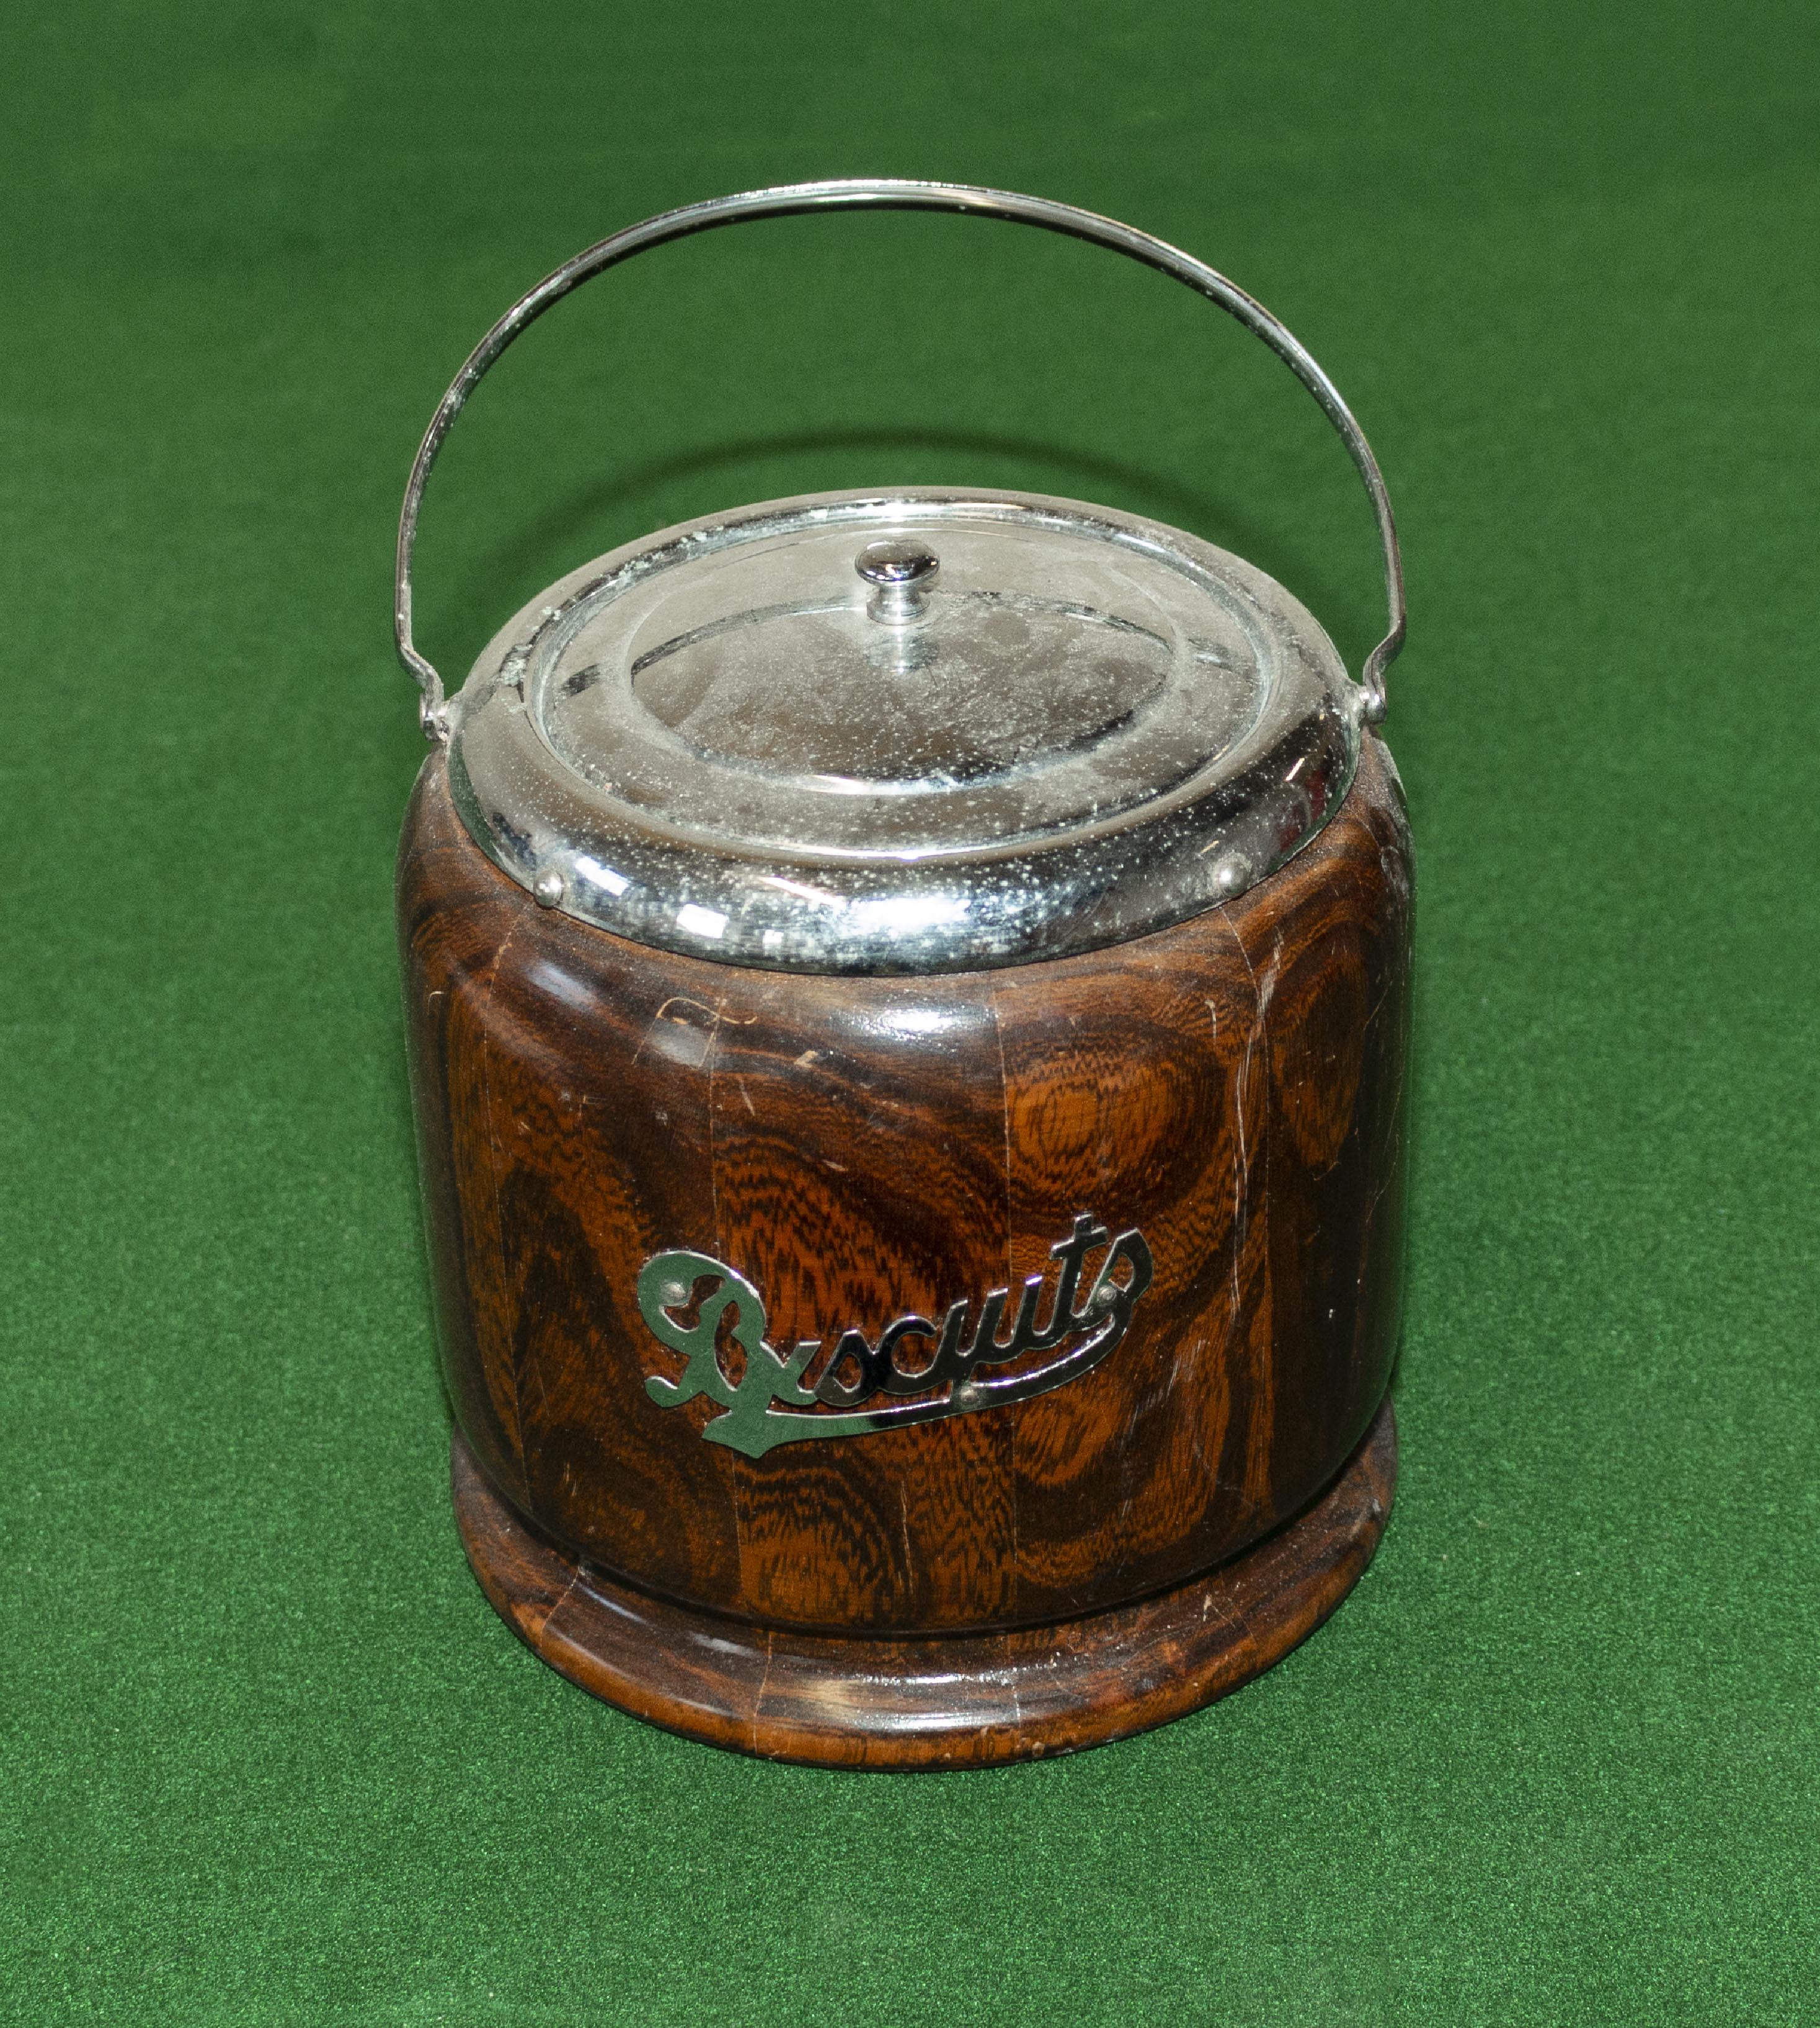 A vintage biscuit barrel